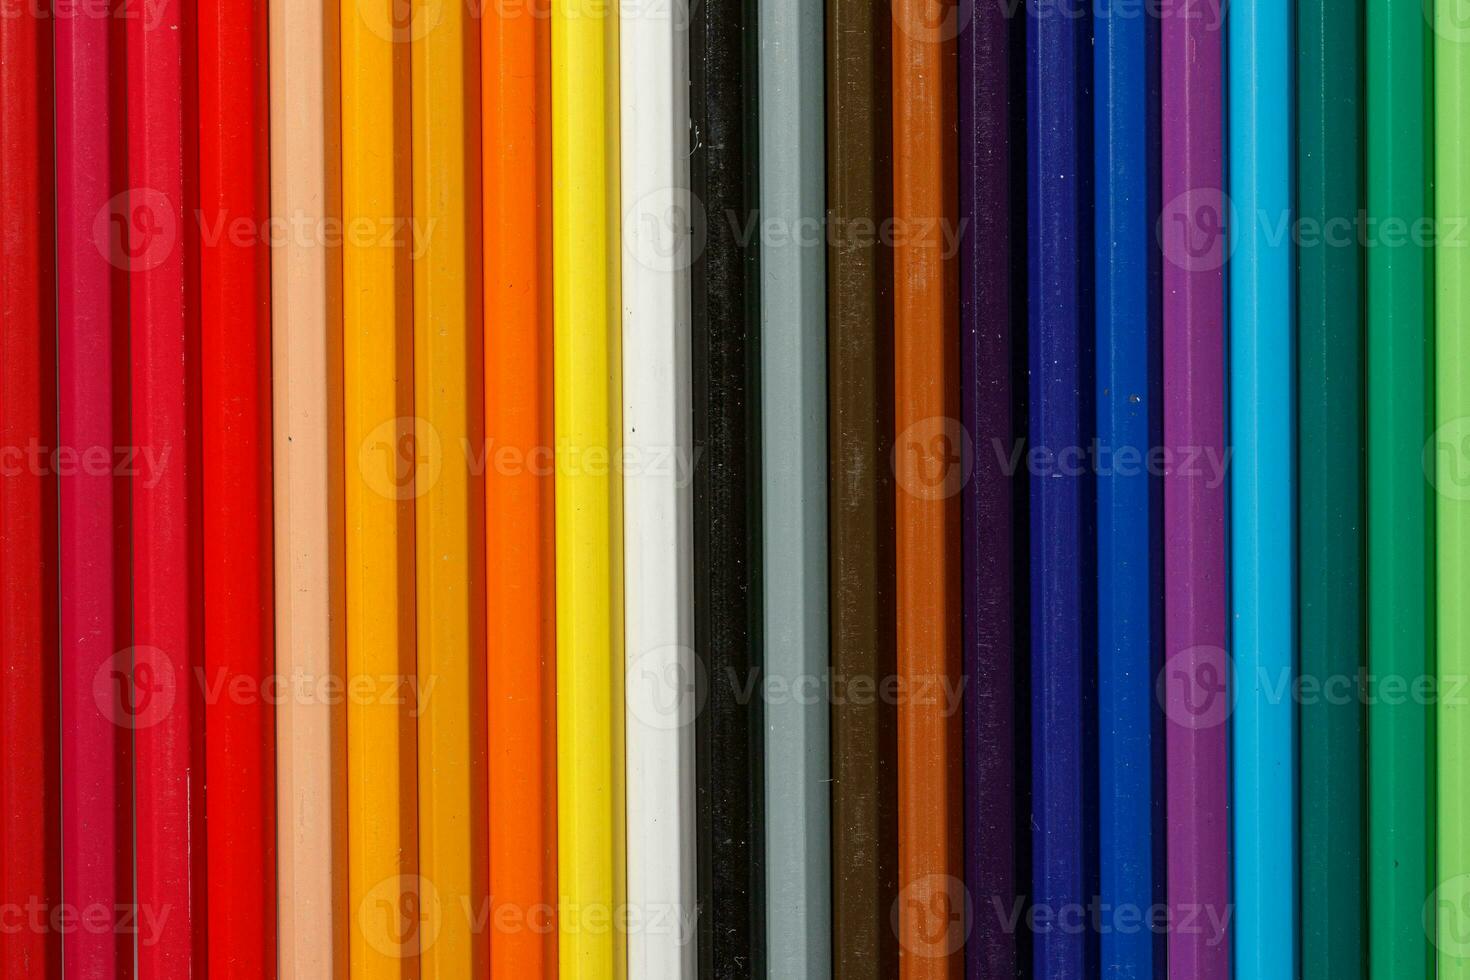 Multi-colored pencils in a row photo